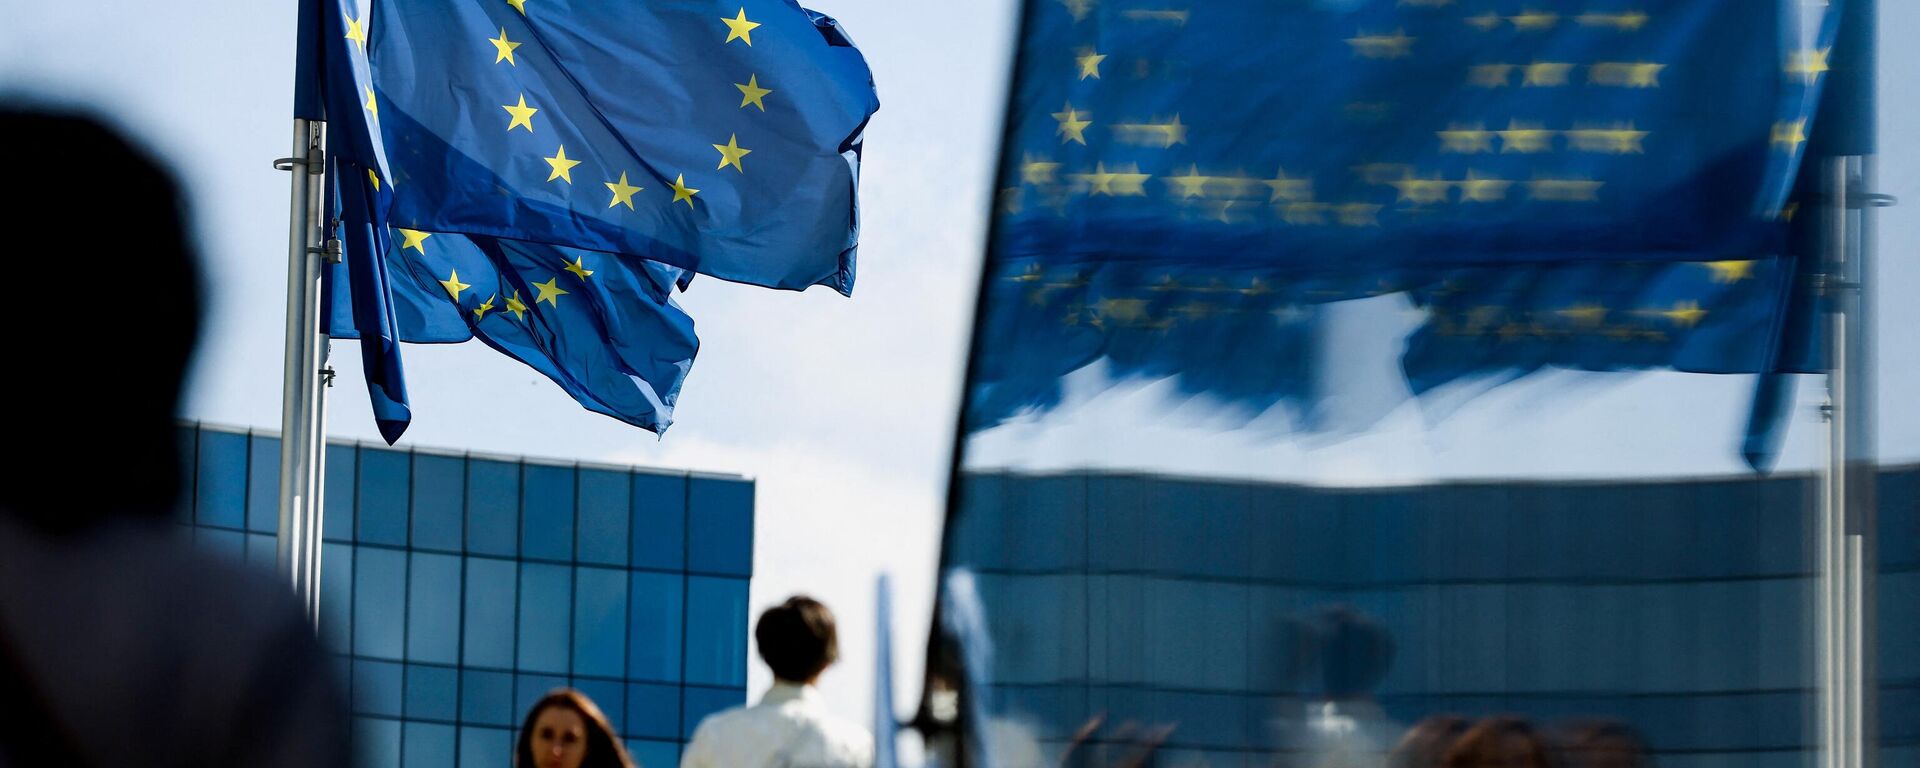 Люди идут перед флагом Евросоюза в районе штаб-квартиры ЕС в Брюсселе 23 сентября 2021 г. - Sputnik Грузия, 1920, 30.08.2022